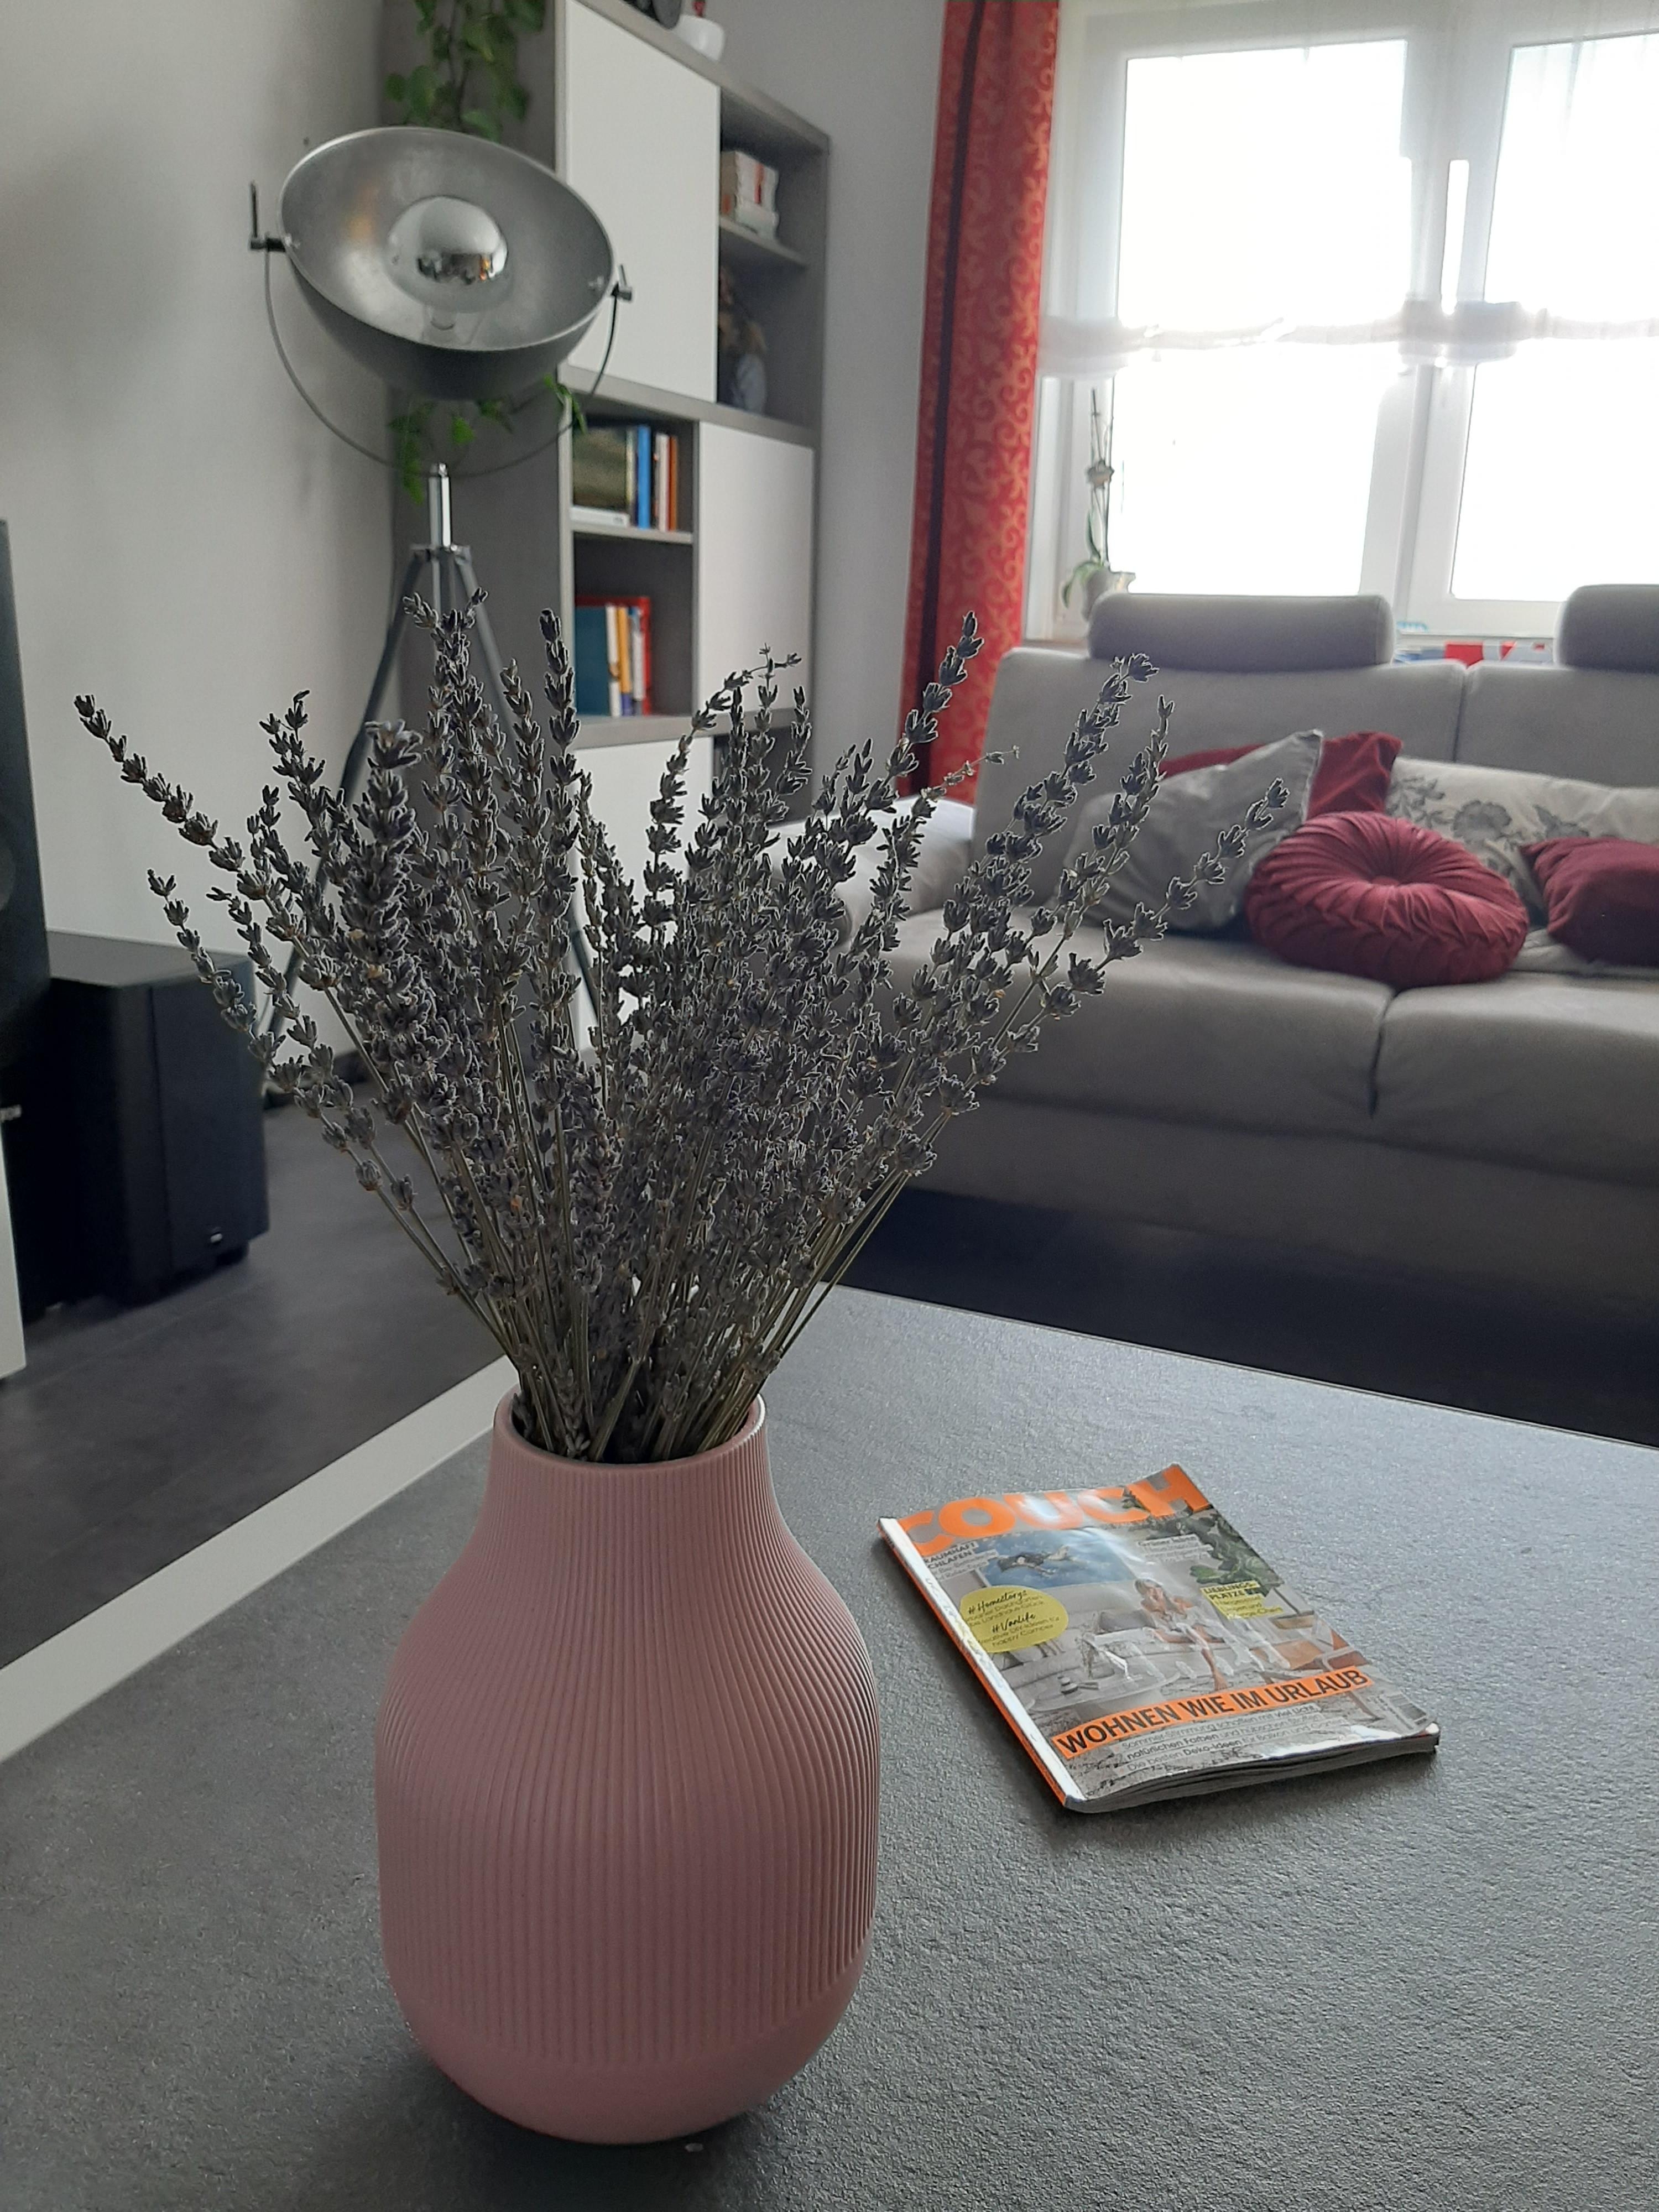 Zeit für einen neuen Duft!
#Lavendel #Vase 